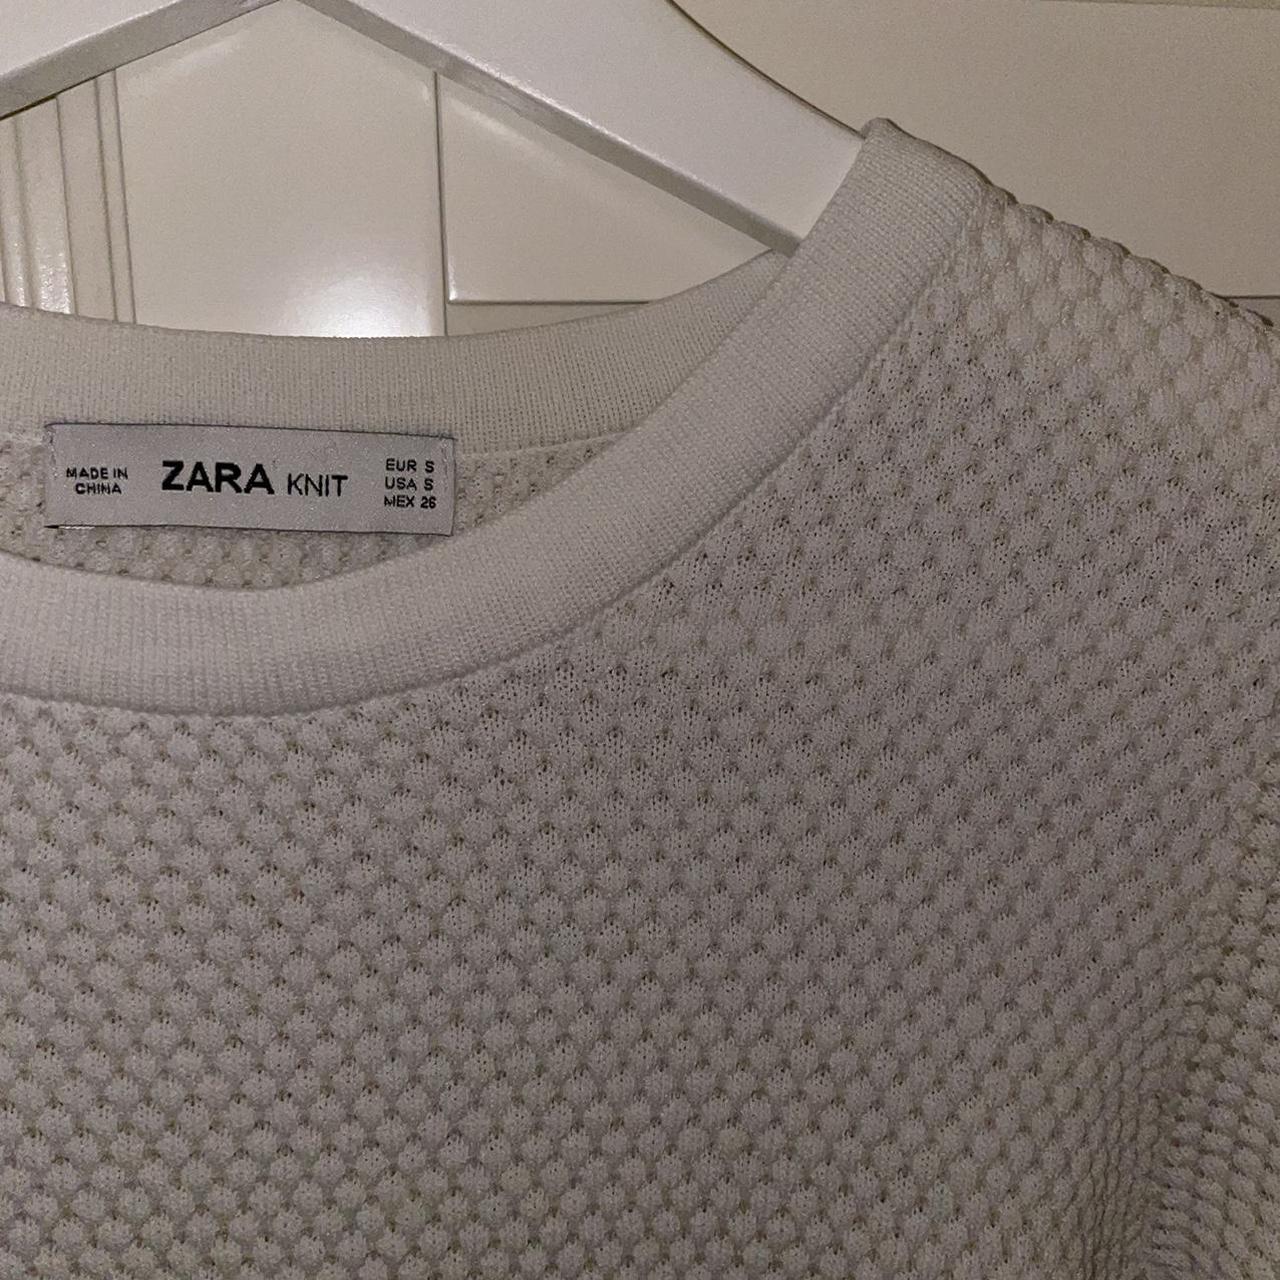 Product Image 2 - Zara cream waffle knit jumper
Size: